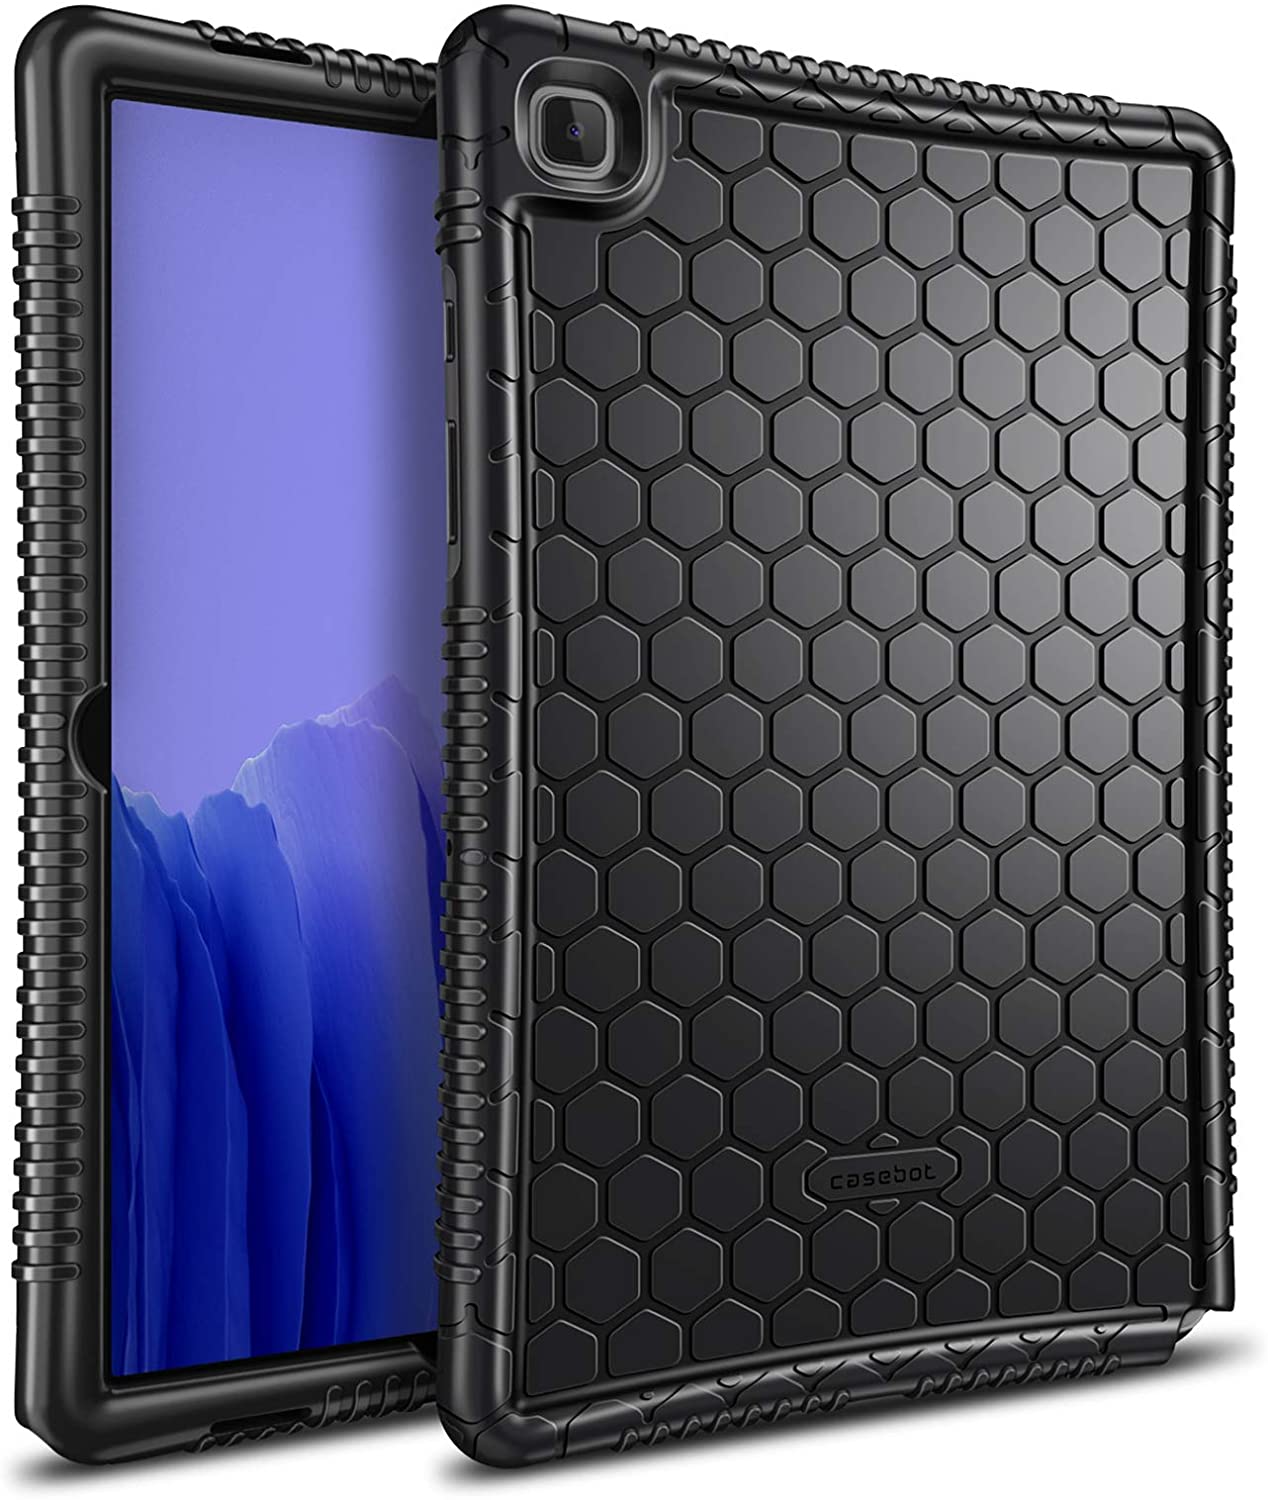 Samsung Galaxy Tab A7 10.4 Case Silicone Black